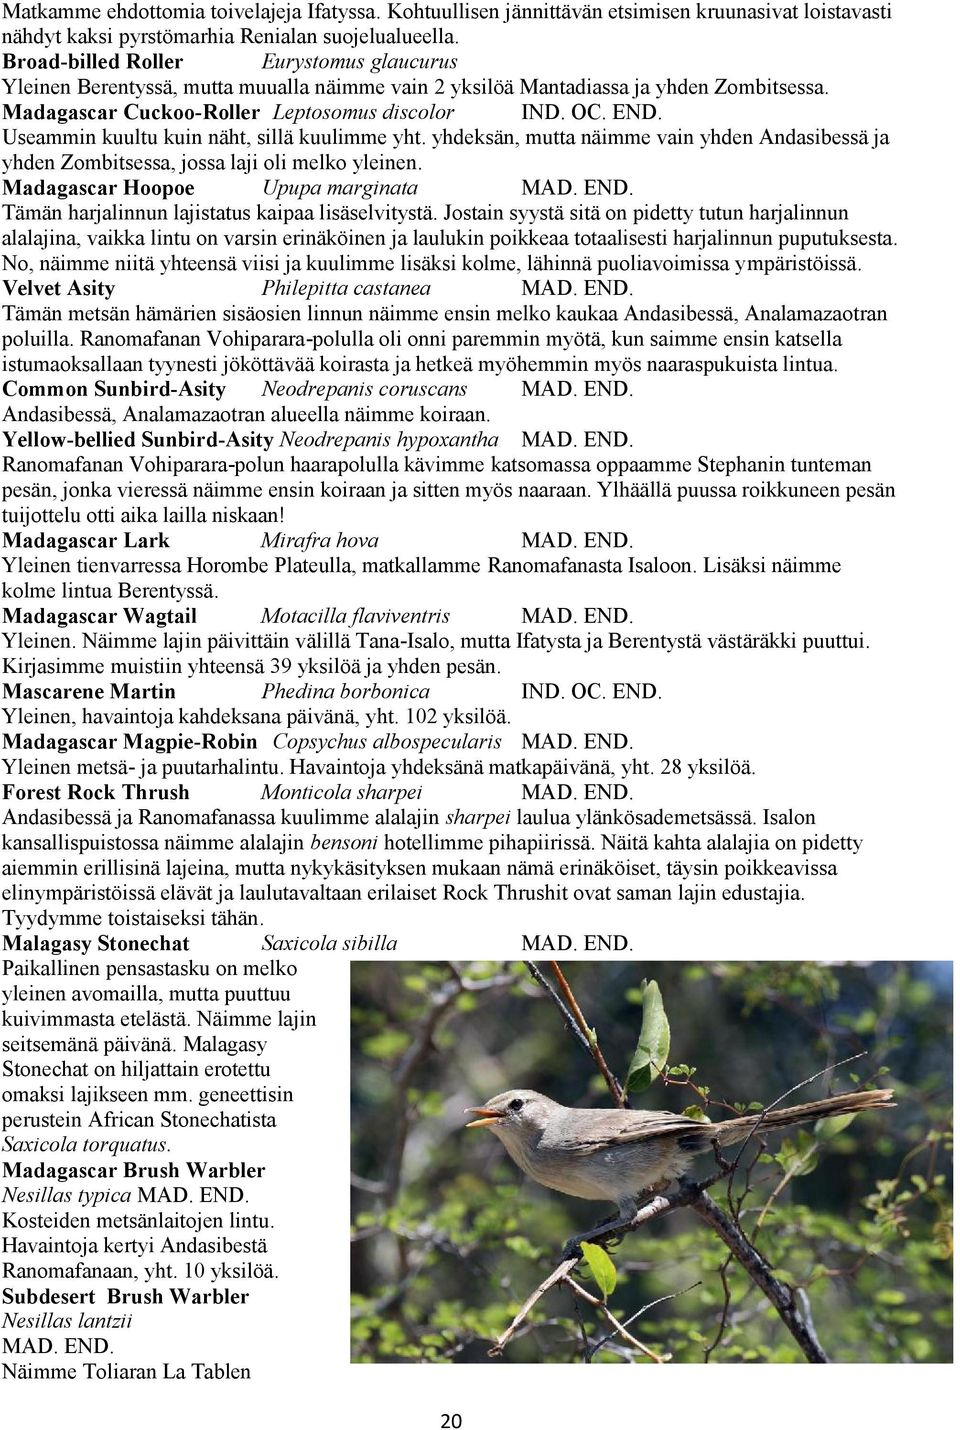 Madagascar Cuckoo-Roller Leptosomus discolor Useammin kuultu kuin näht, sillä kuulimme yht. yhdeksän, mutta näimme vain yhden Andasibessä ja yhden Zombitsessa, jossa laji oli melko yleinen.